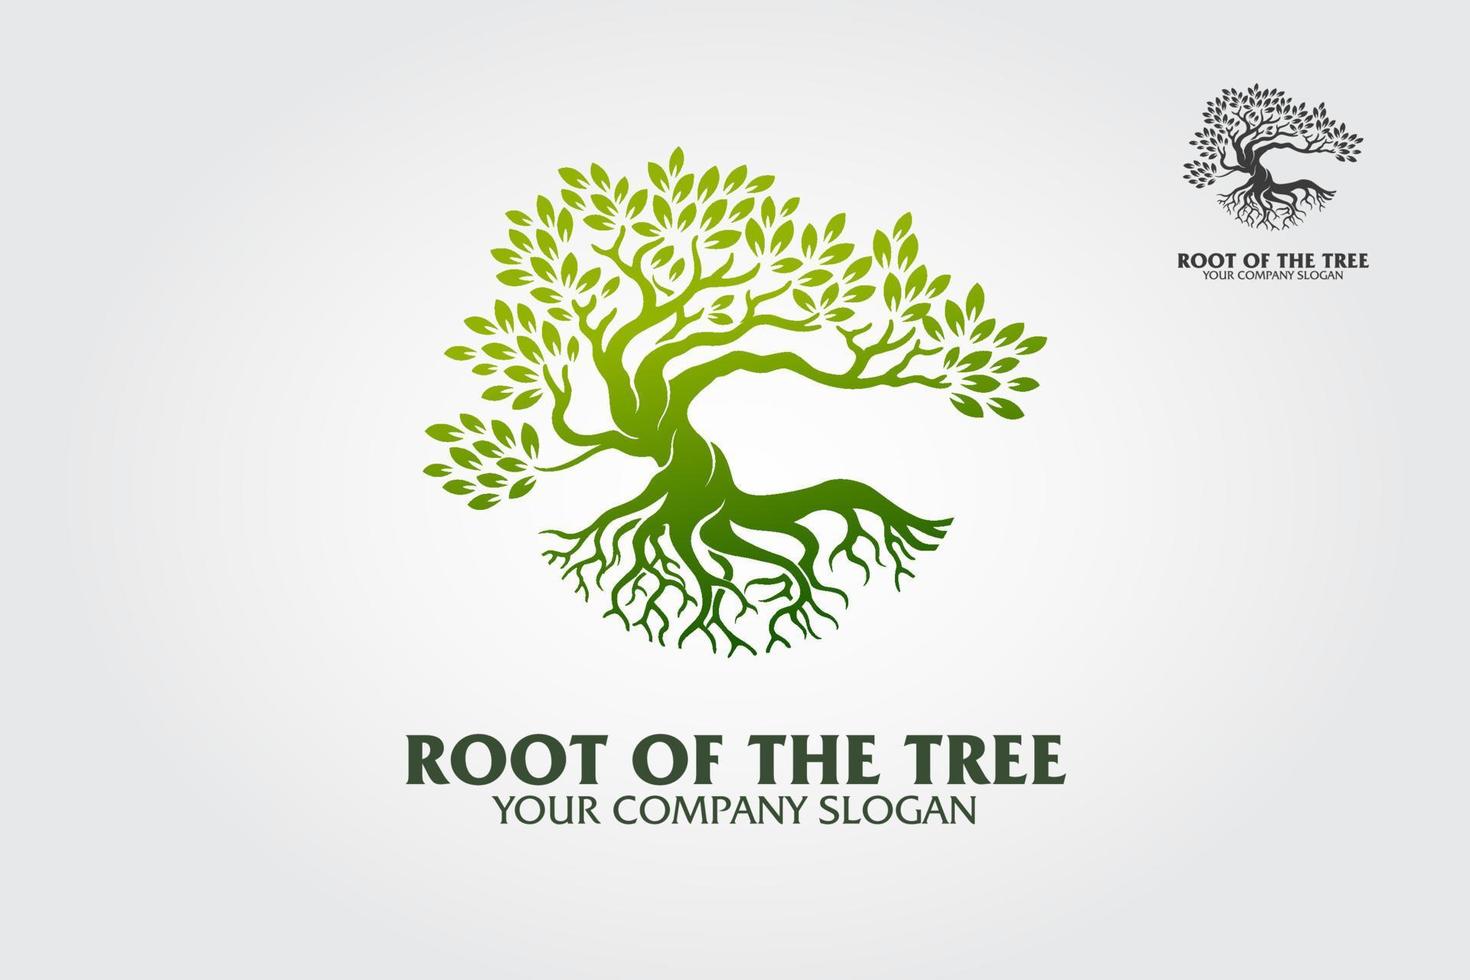 logo racine de l'arbre illustrant un arbre racines, branches. excellent modèle de logo pour la mode, le paysage, le jardinage ou dans de nombreux domaines liés à l'éco-vert. vecteur